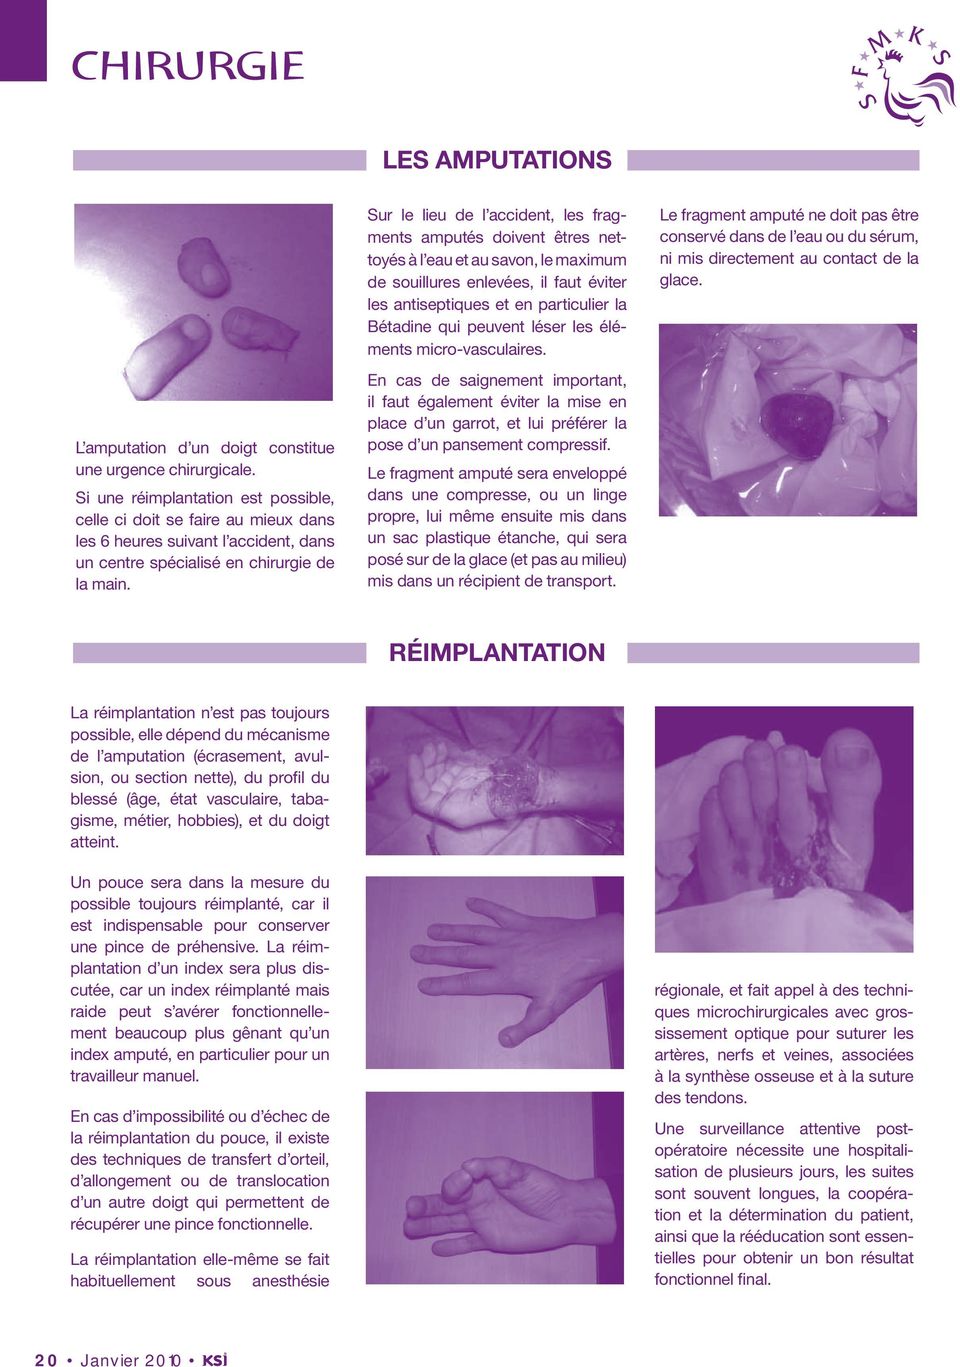 L amputation d un doigt constitue une urgence chirurgicale.